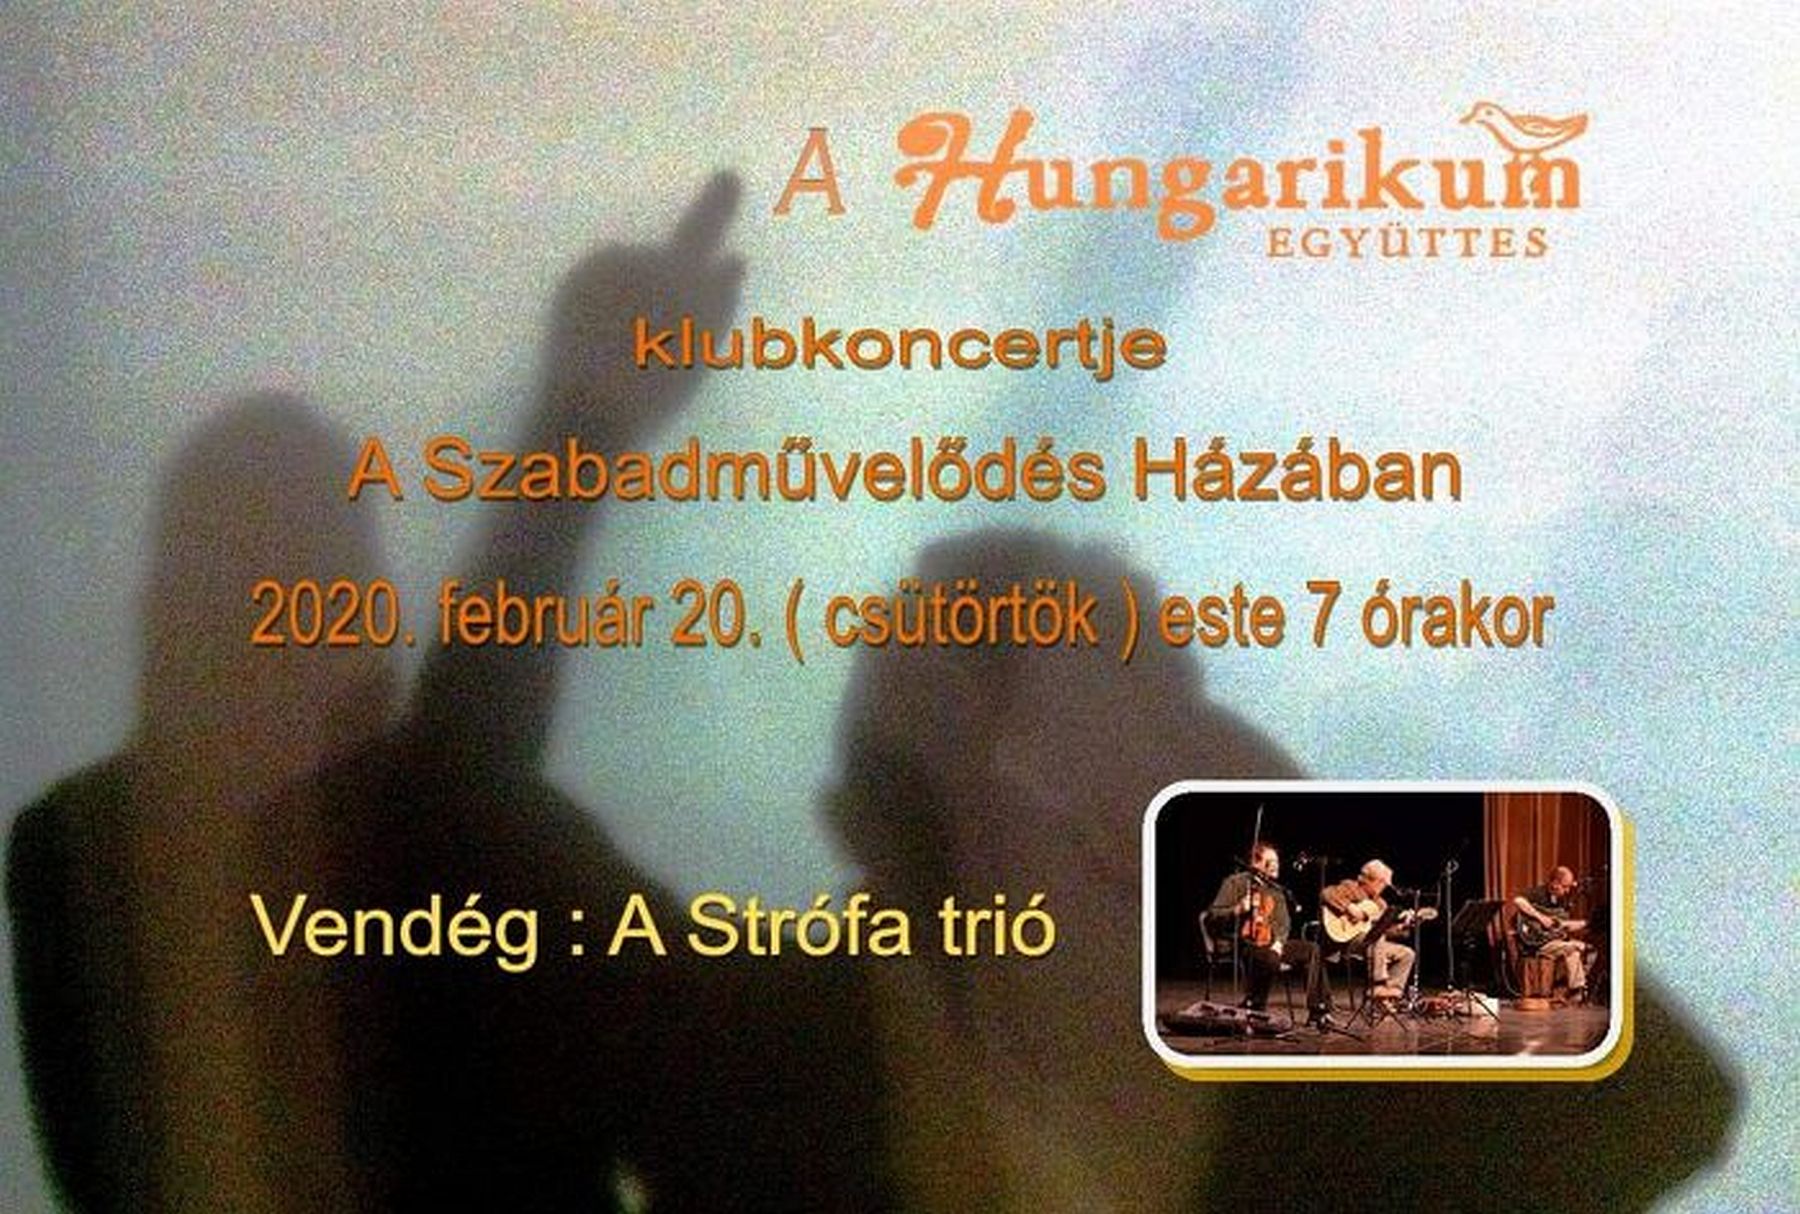 Hungarikum klubkoncert a Strófa trió vendégszereplésével csütörtökön